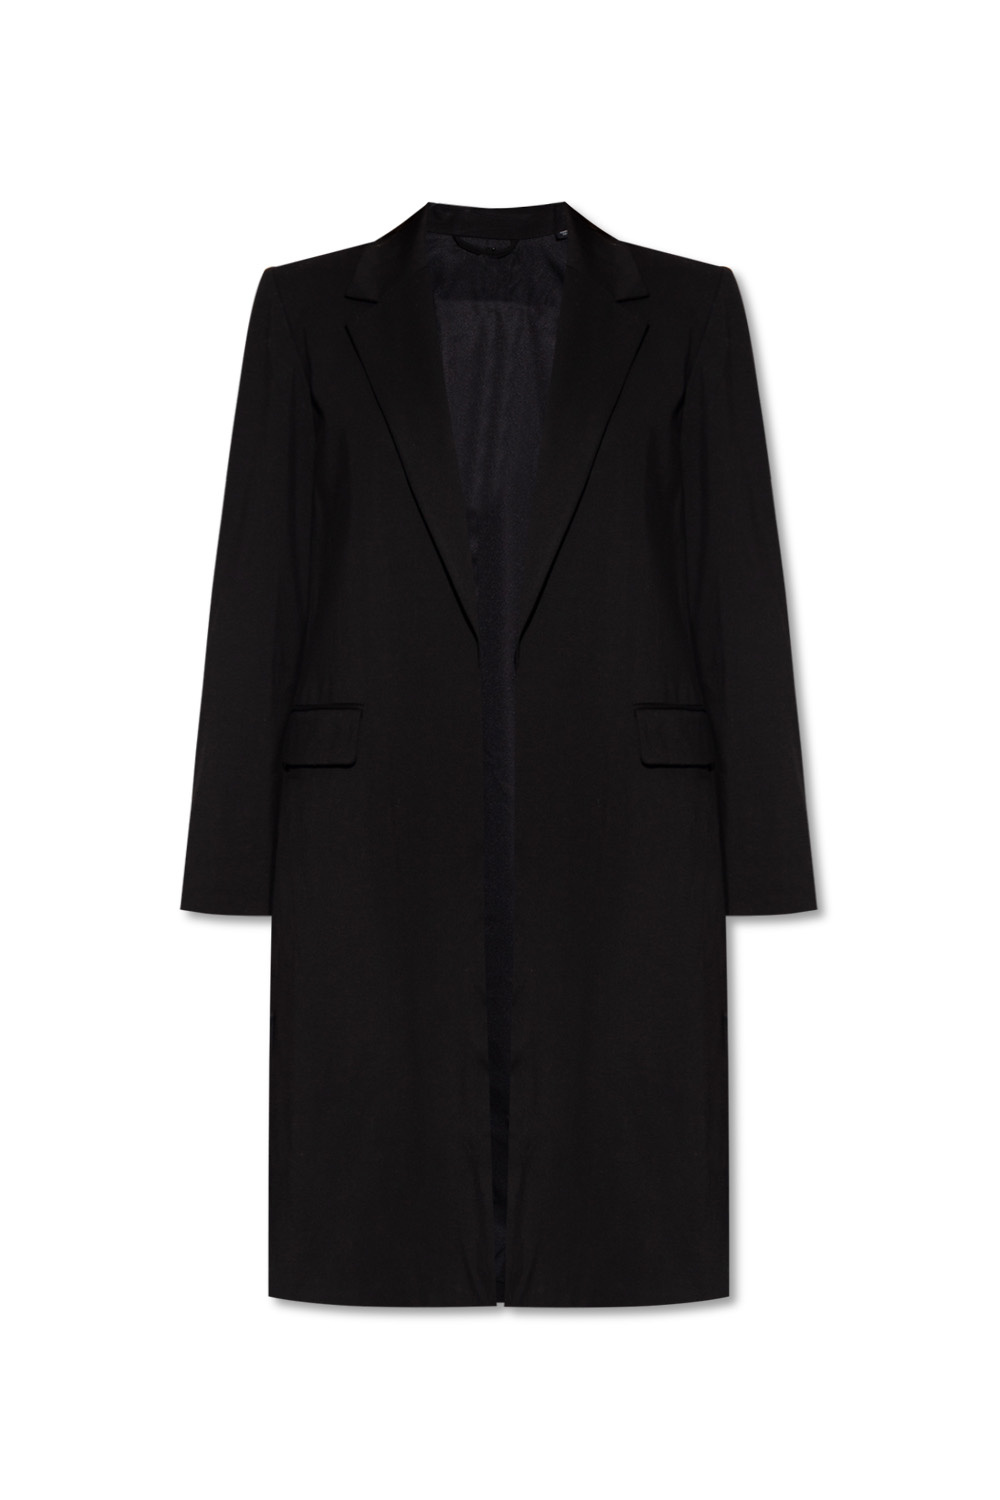 AllSaints ‘Aleida’ coat with side slits